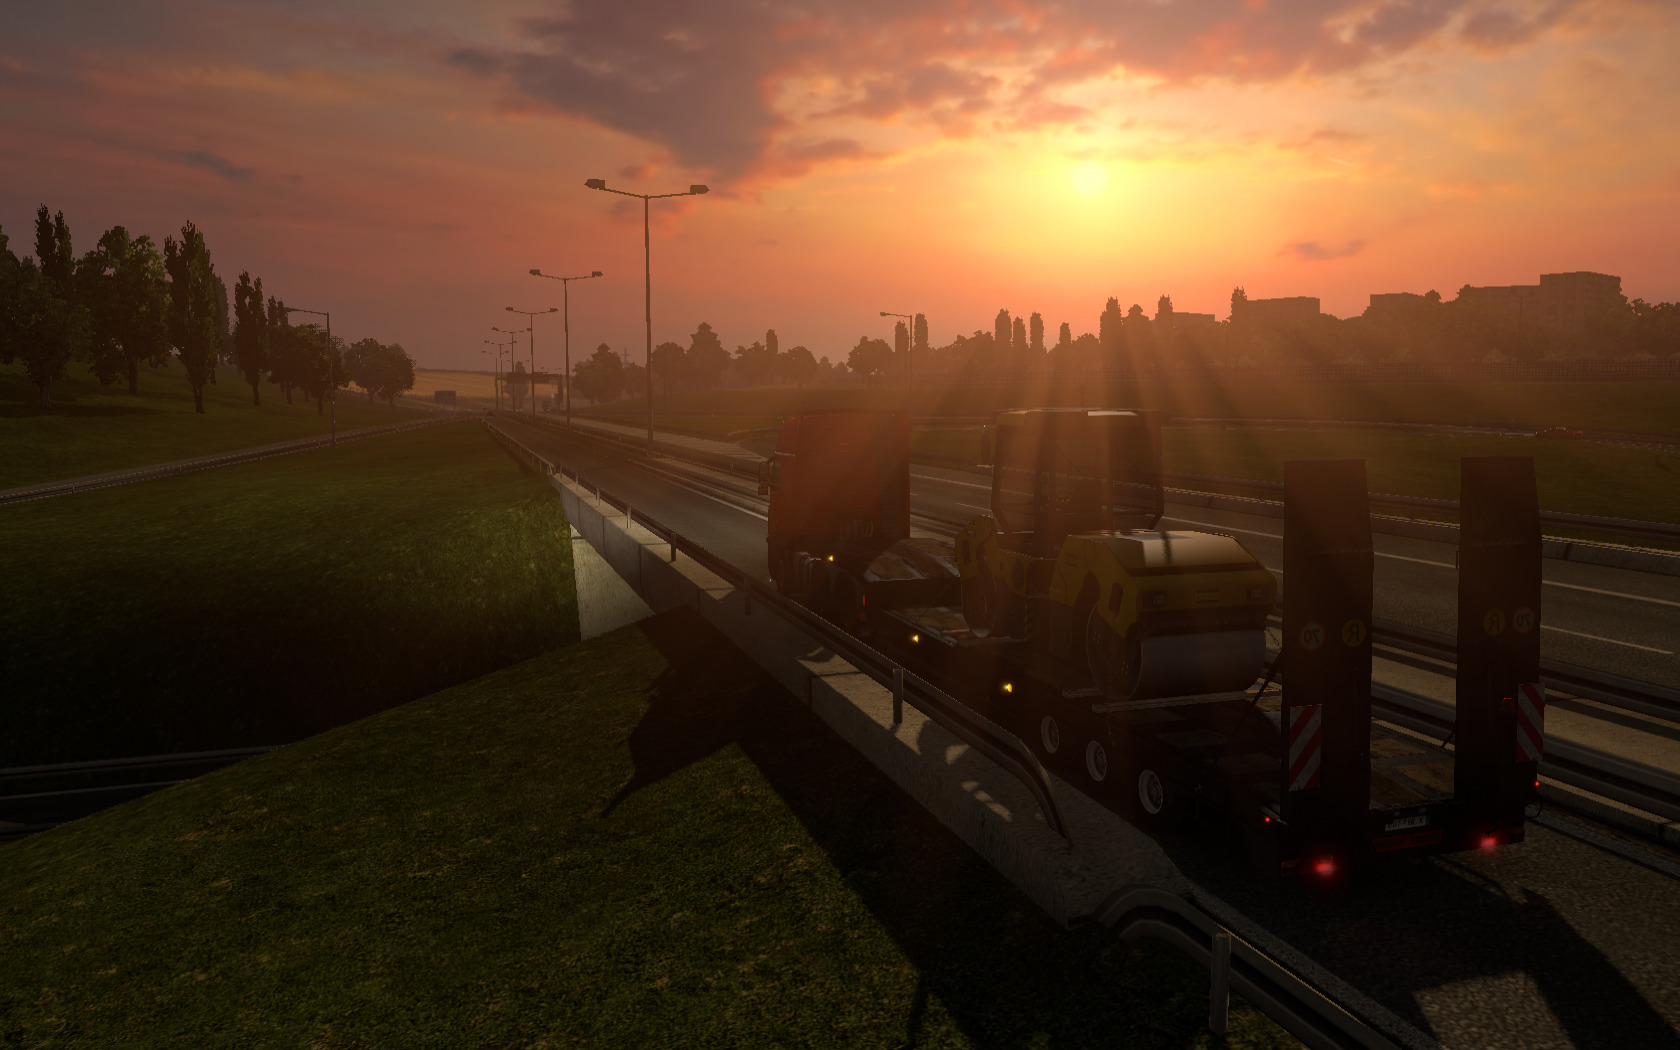 free download truck simulator 2